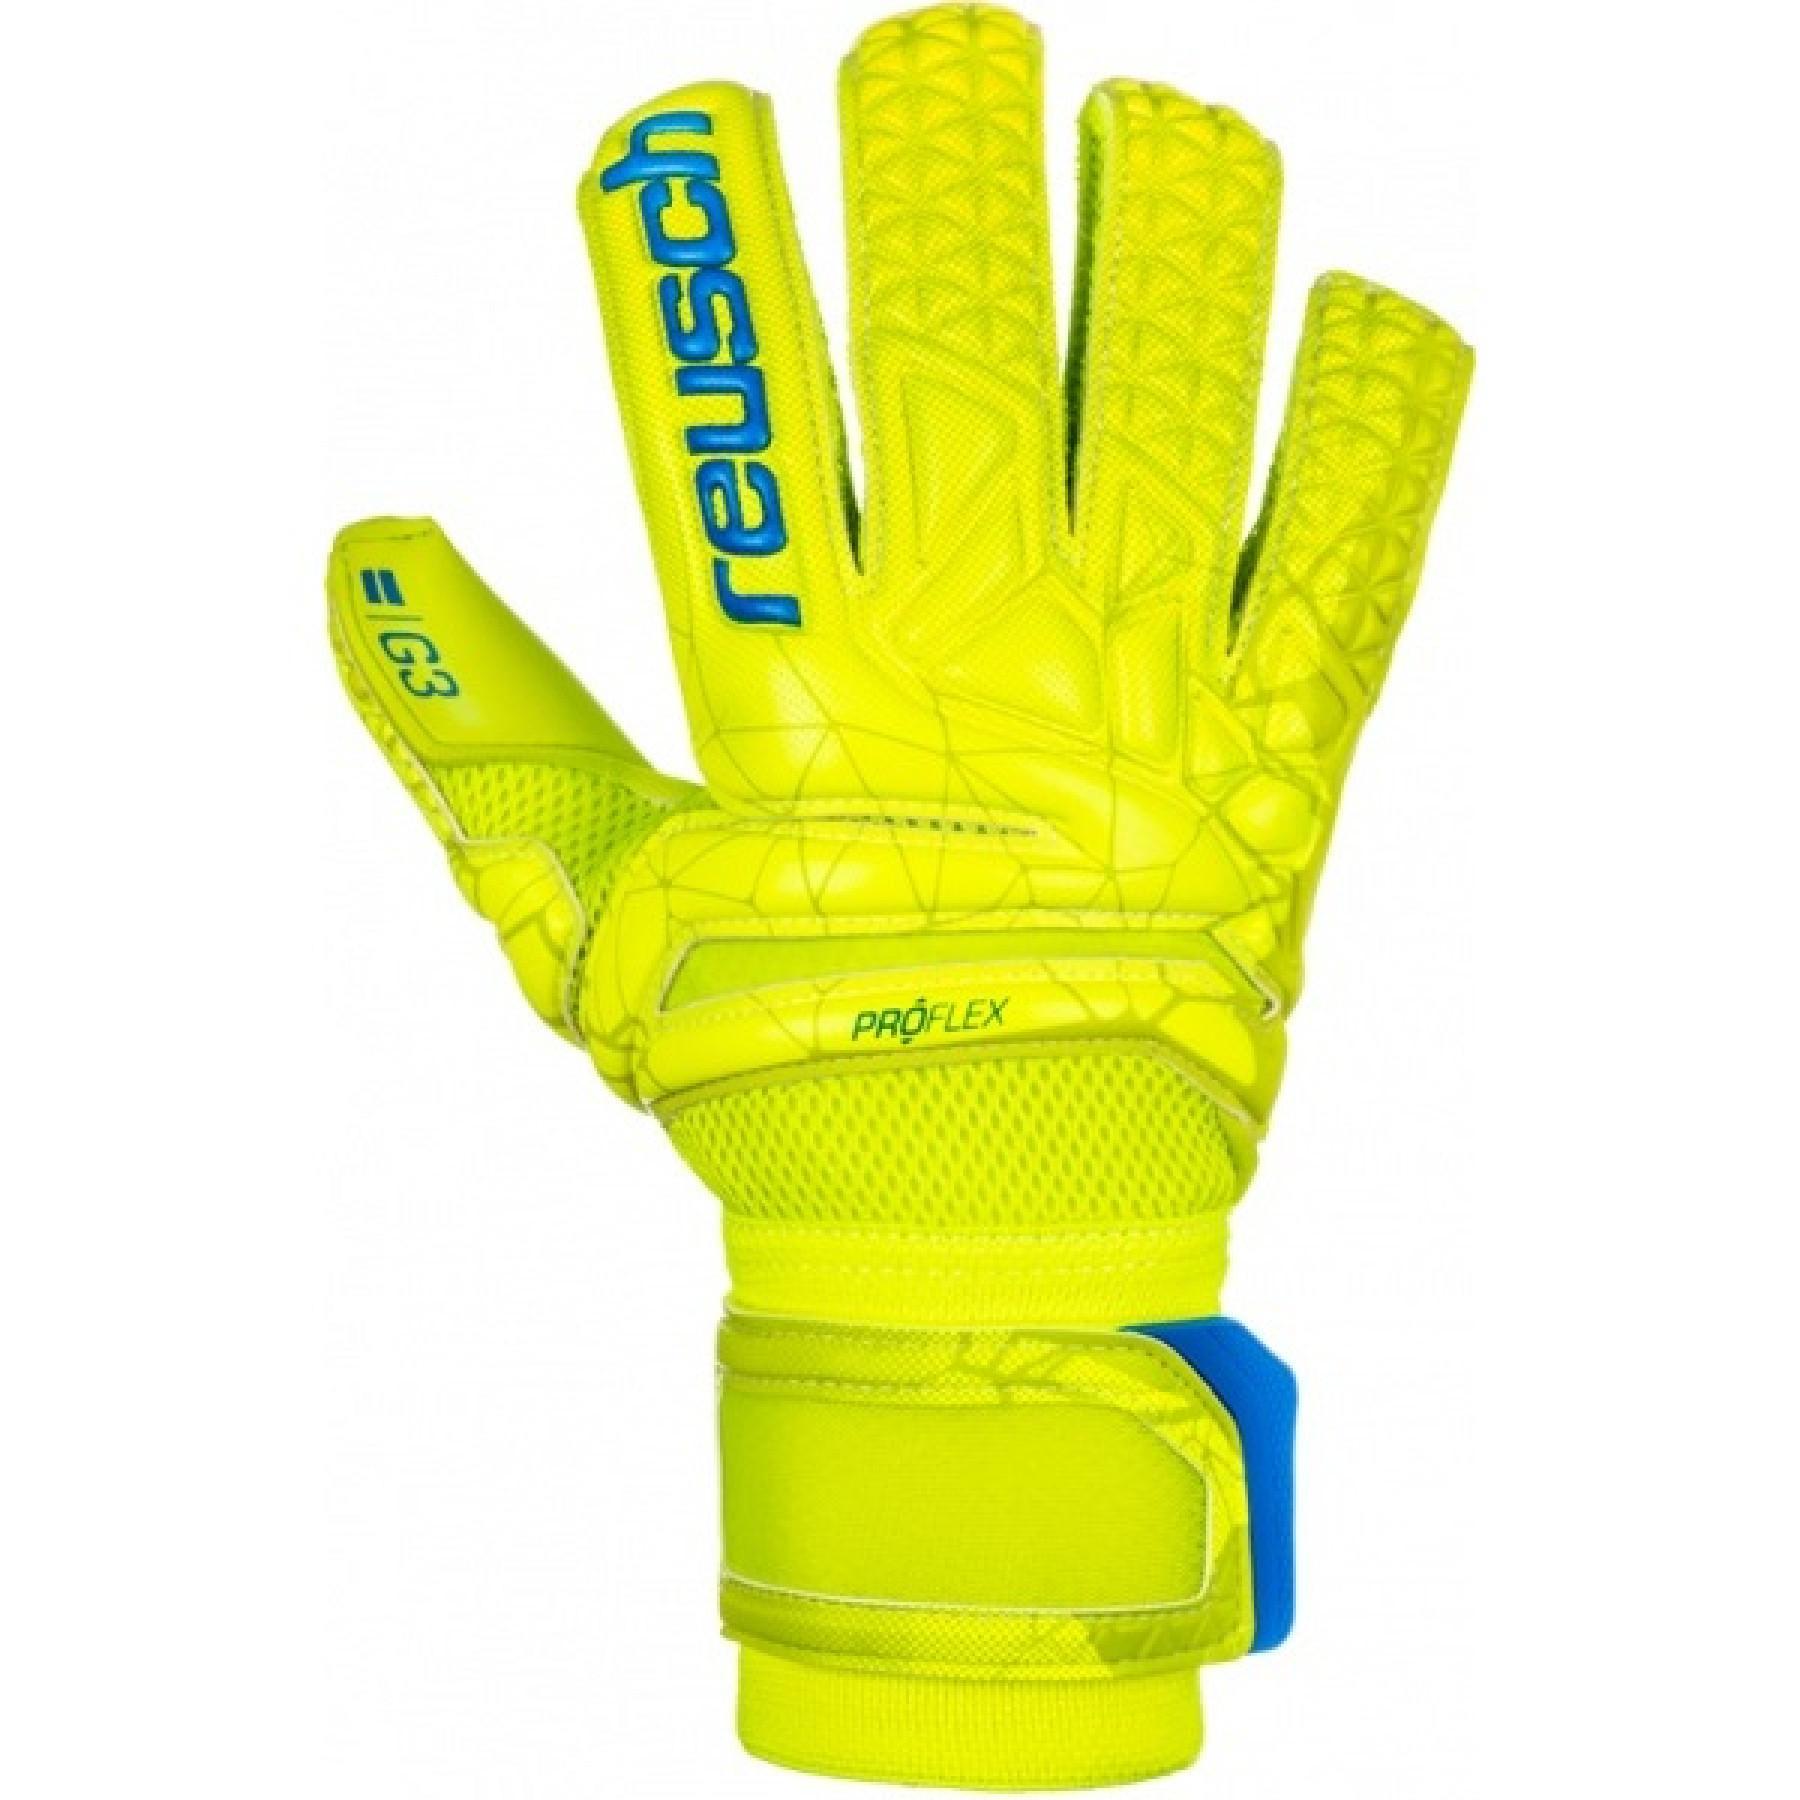 Goalkeeper gloves Reusch Fit Control Pro G3